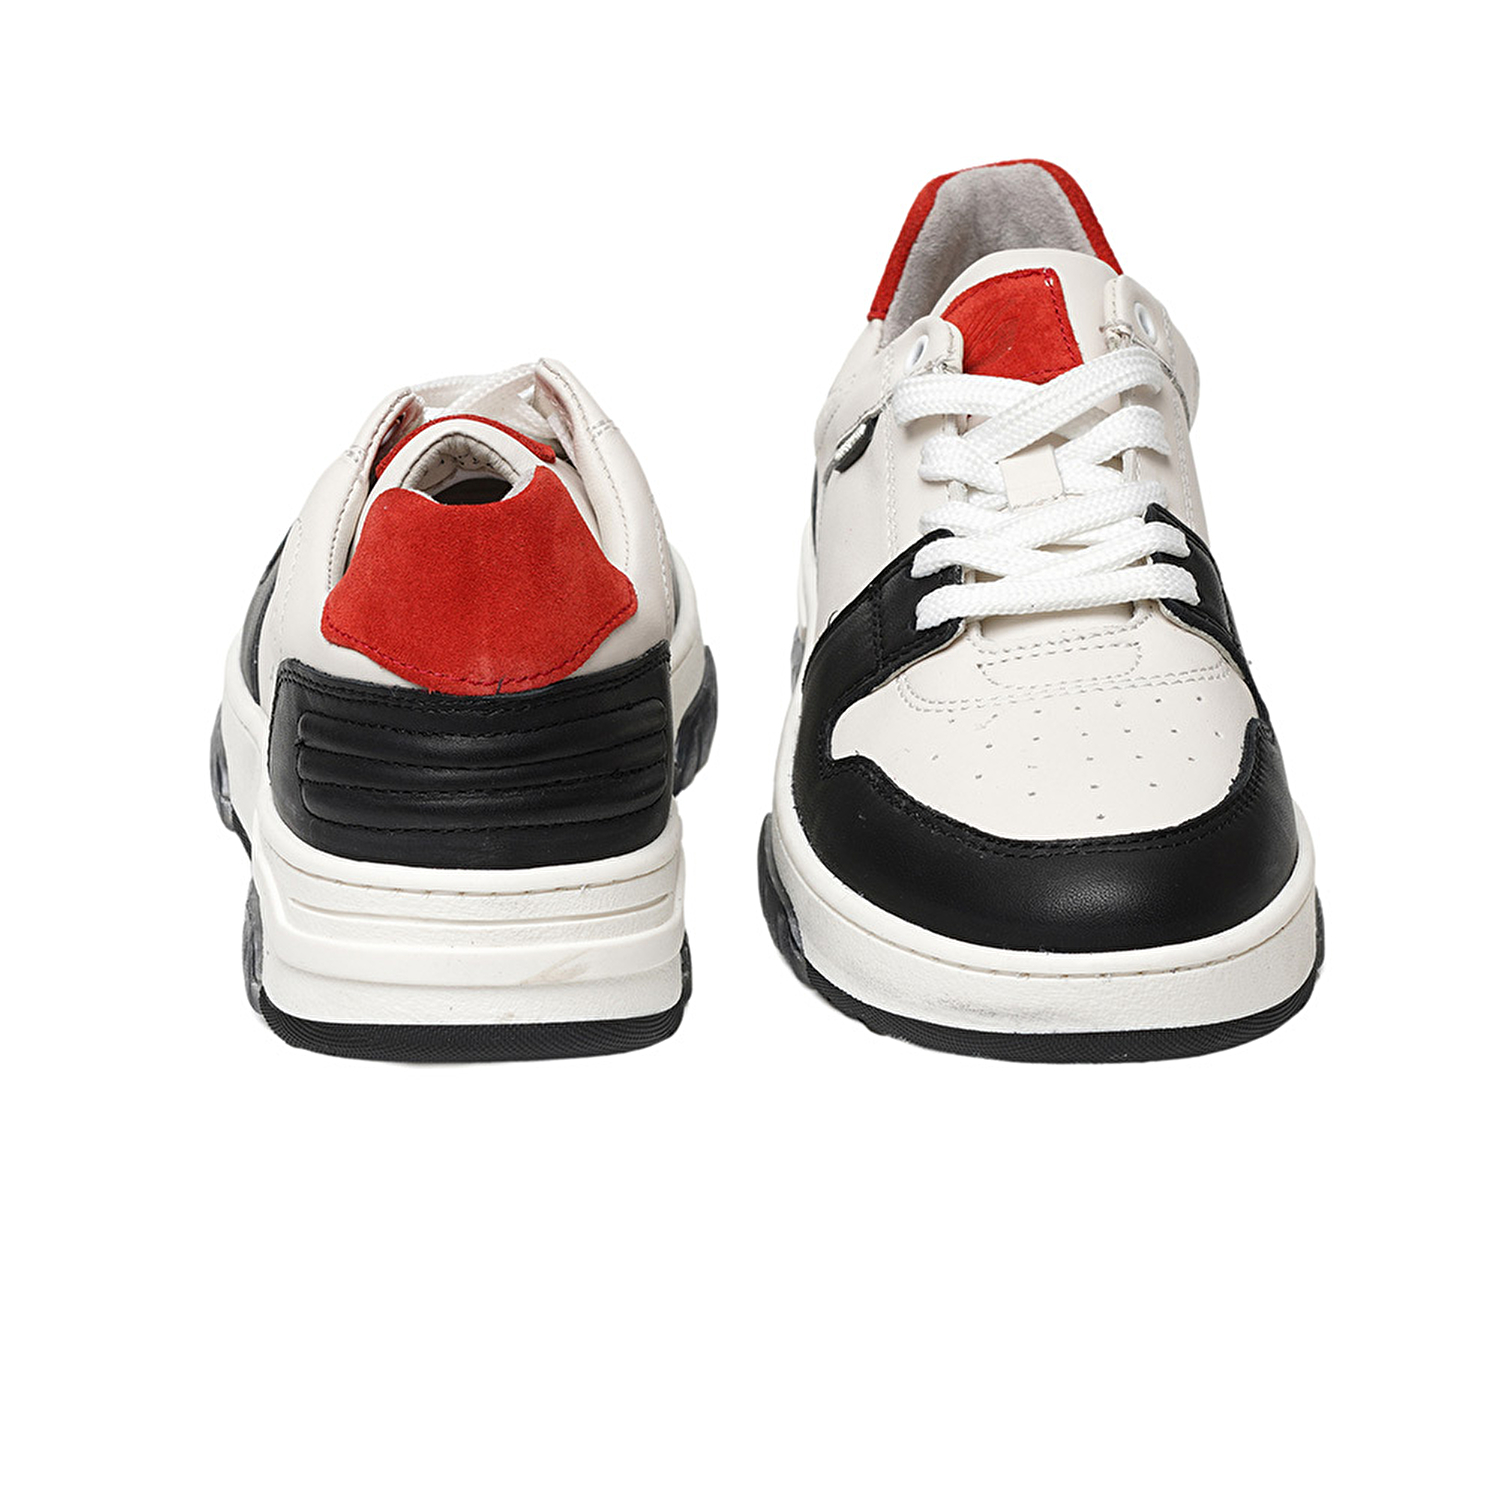 Kadın Beyaz Siyah Hakiki Deri Sneaker Ayakkabı 3K2SA33021-6